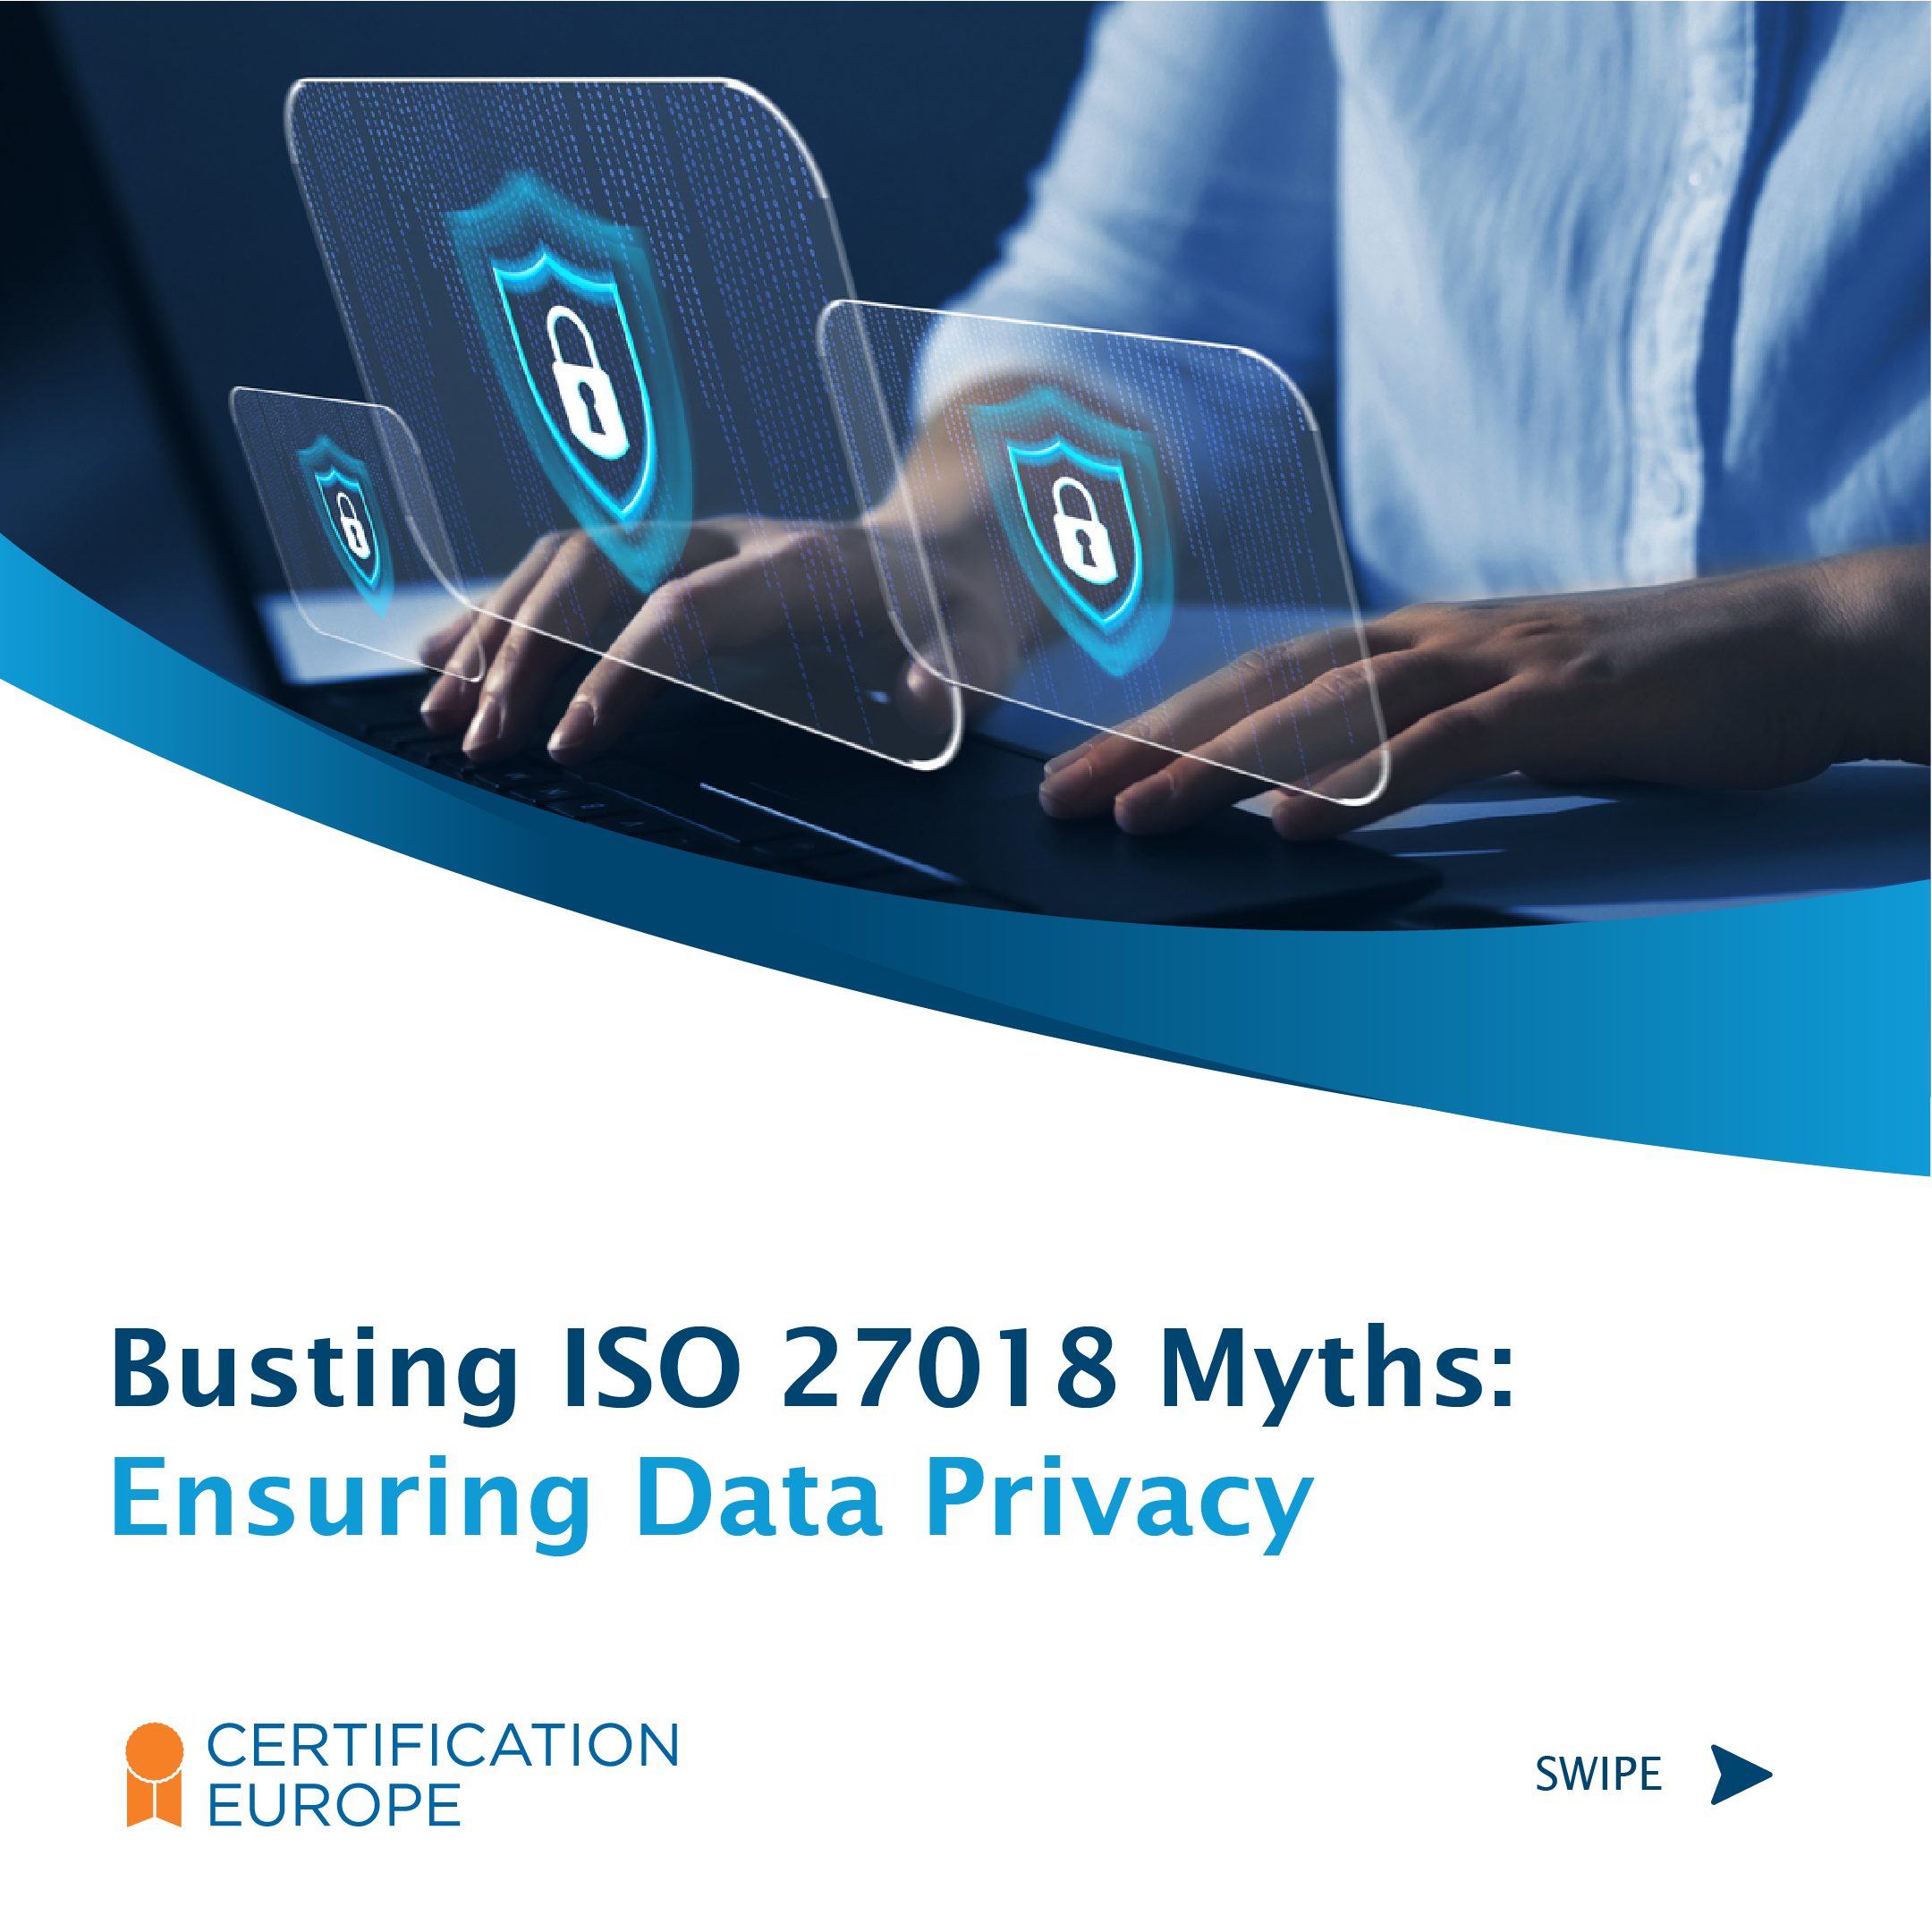 Bursting ISO 27018 myths